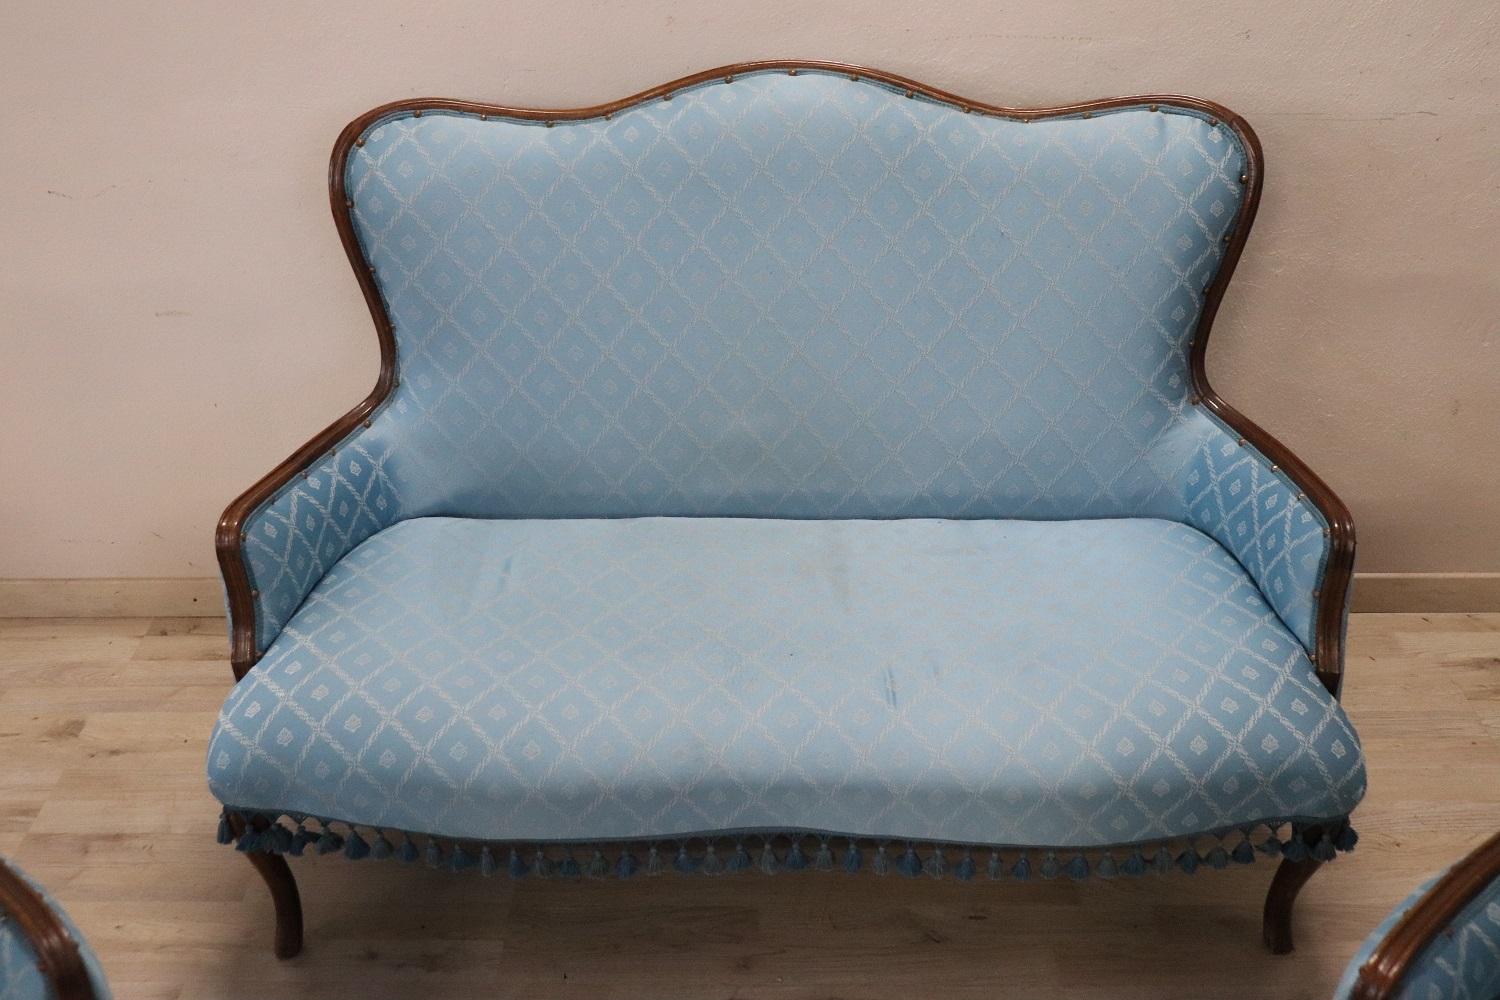 Schöne komplette italienische Luxus Louis Philippe-Stil 1930er Jahre Wohnzimmer-Set umfasst:
1 Sofa
2 Sessel
Raffinierte Wohnzimmereinrichtung aus Buchenholz. Das Wohnzimmer stammt aus einer bedeutenden italienischen Villa und verschönert den Raum